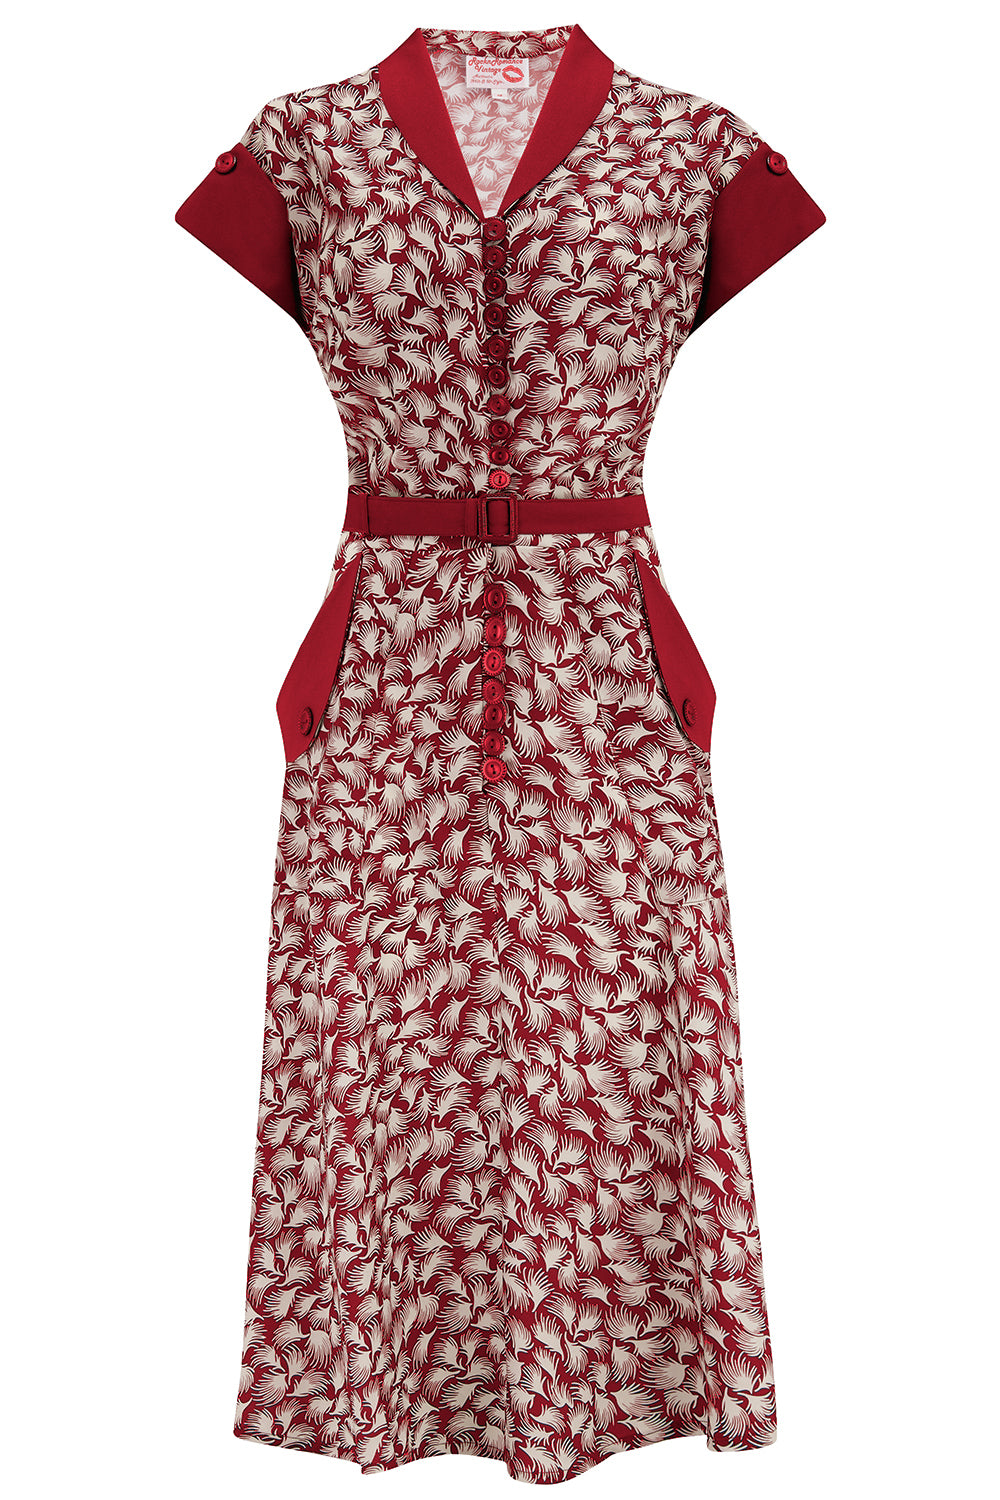 Das „Casey“-Kleid mit Wine Whisp-Print, echter und authentischer Vintage-Stil der 1950er Jahre